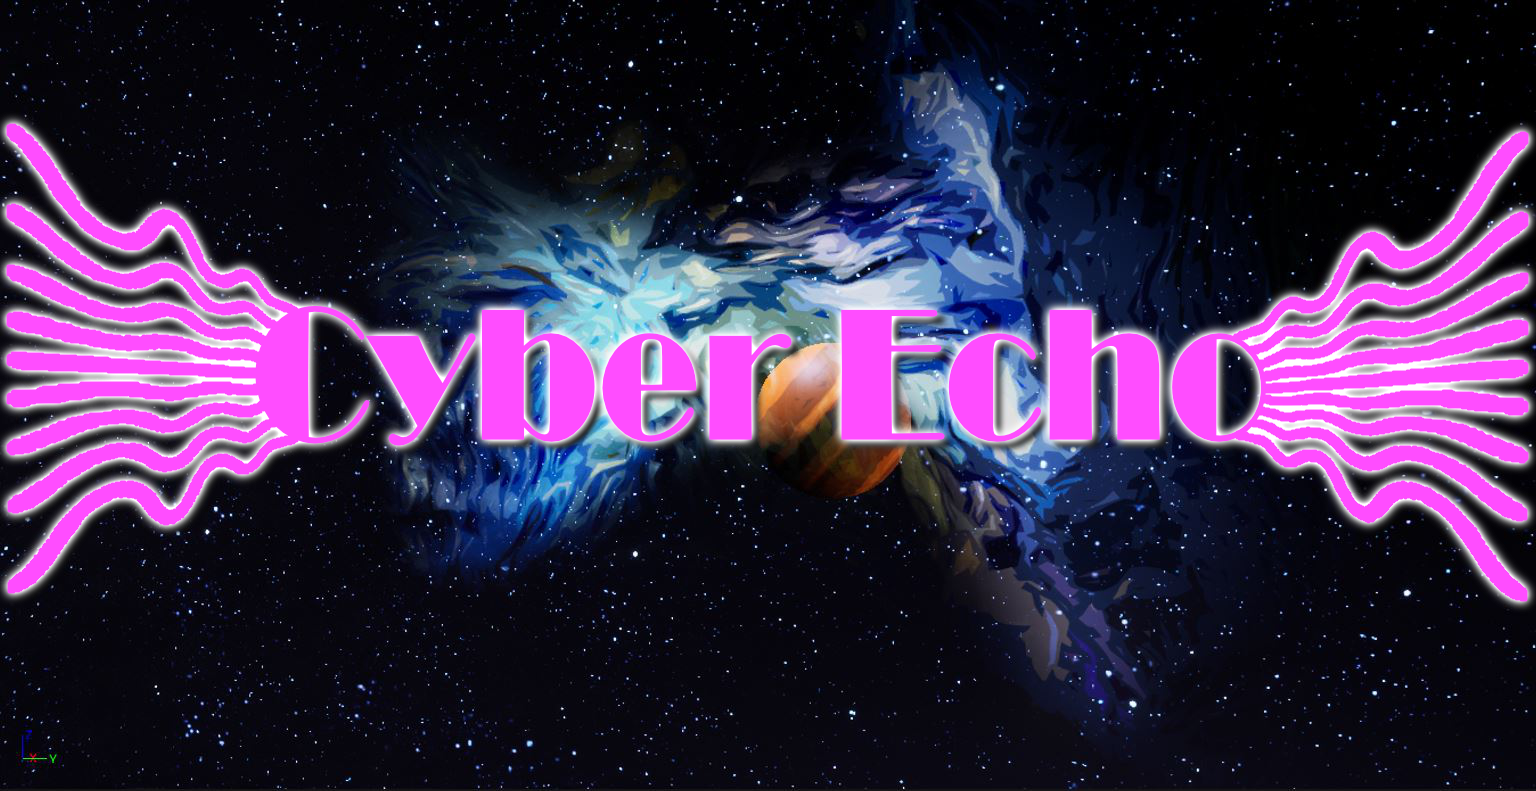 Cyber Echo